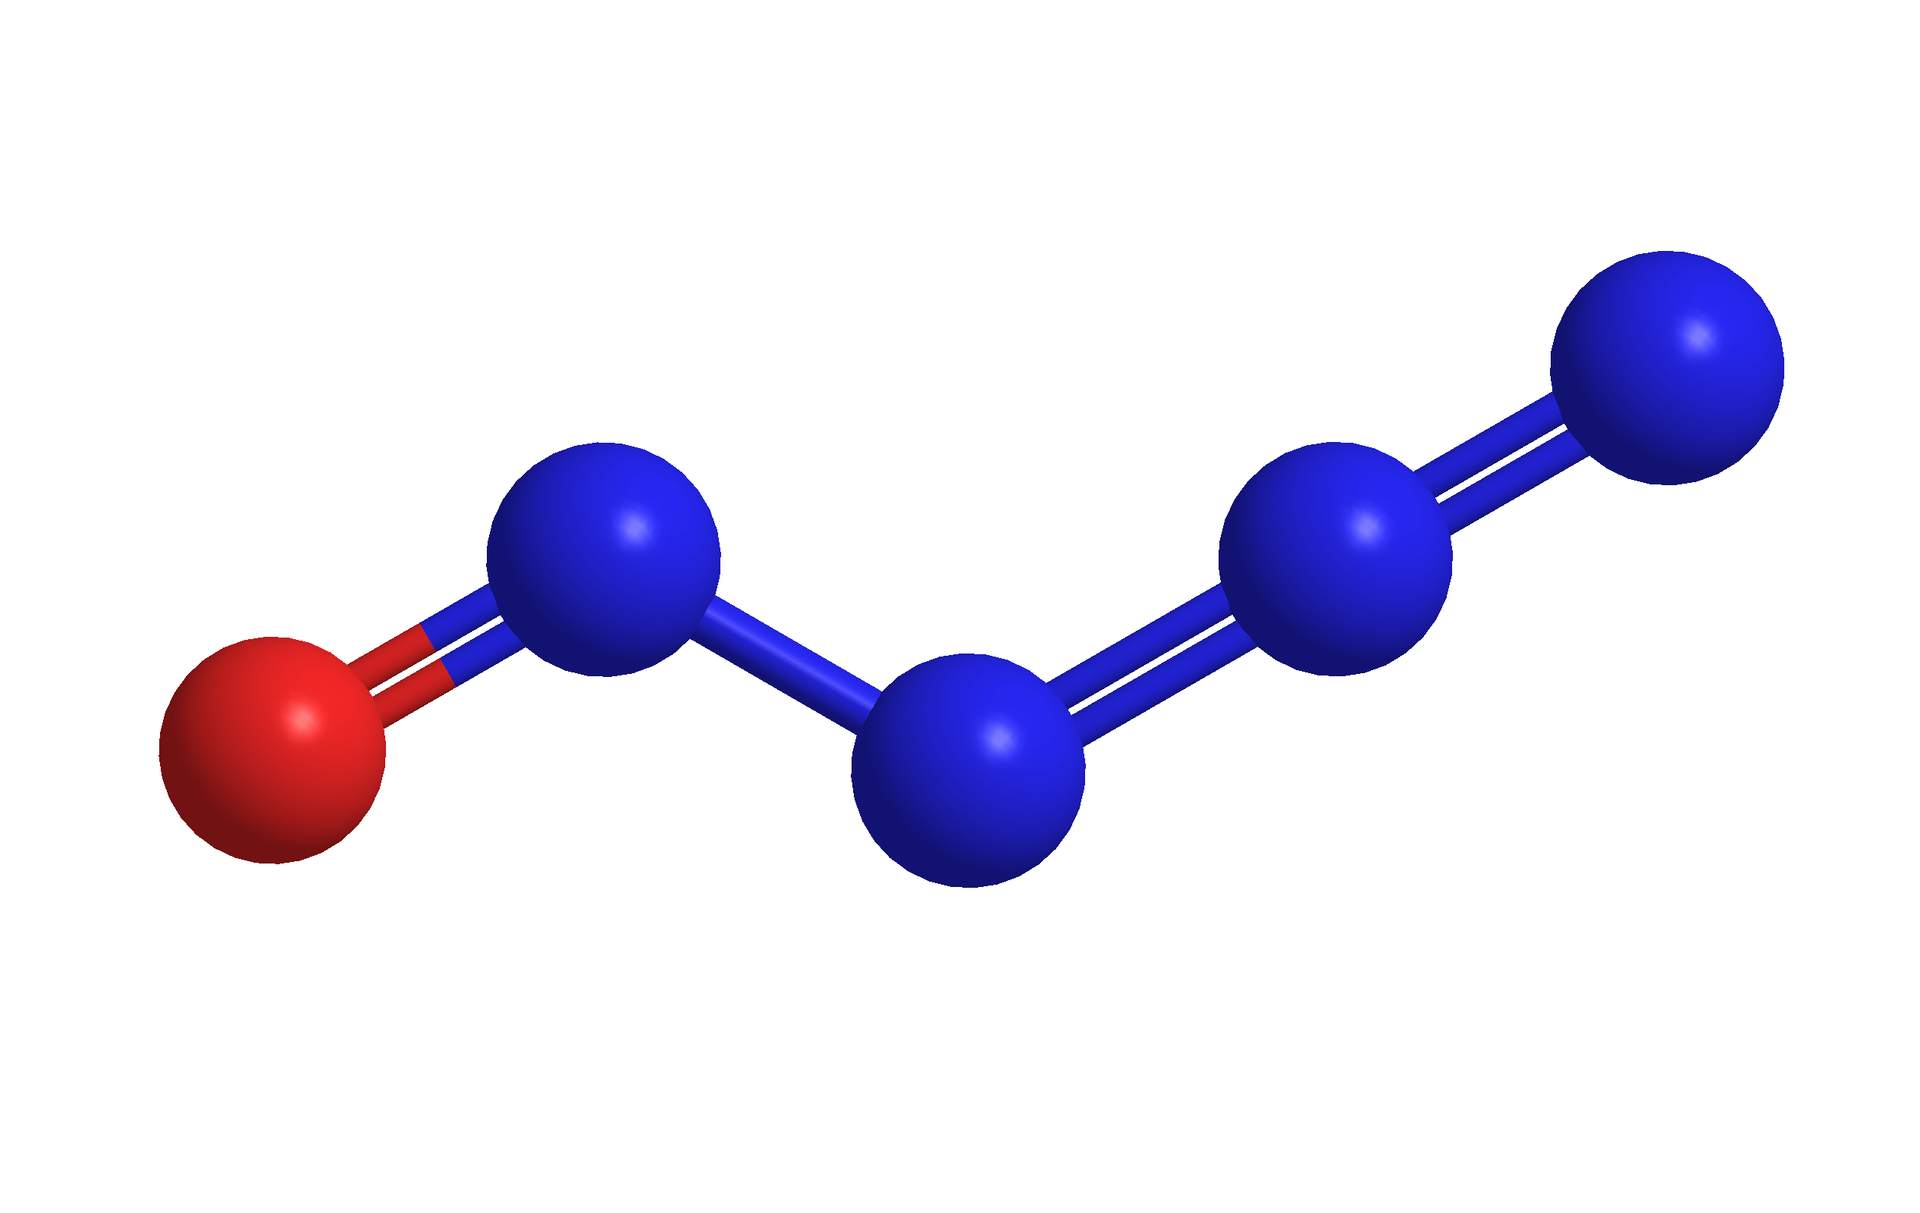 Na ilustracji jest model cząsteczki. Są cztery niebieskie kulki i jedna czerwona. Pomiędzy trzema niebieskimi kulkami są wiązania podwójne. Niebieska kulka leżąca po lewej stronie wzoru łączy się wiązaniem podwójnym z czerwoną kulką. 